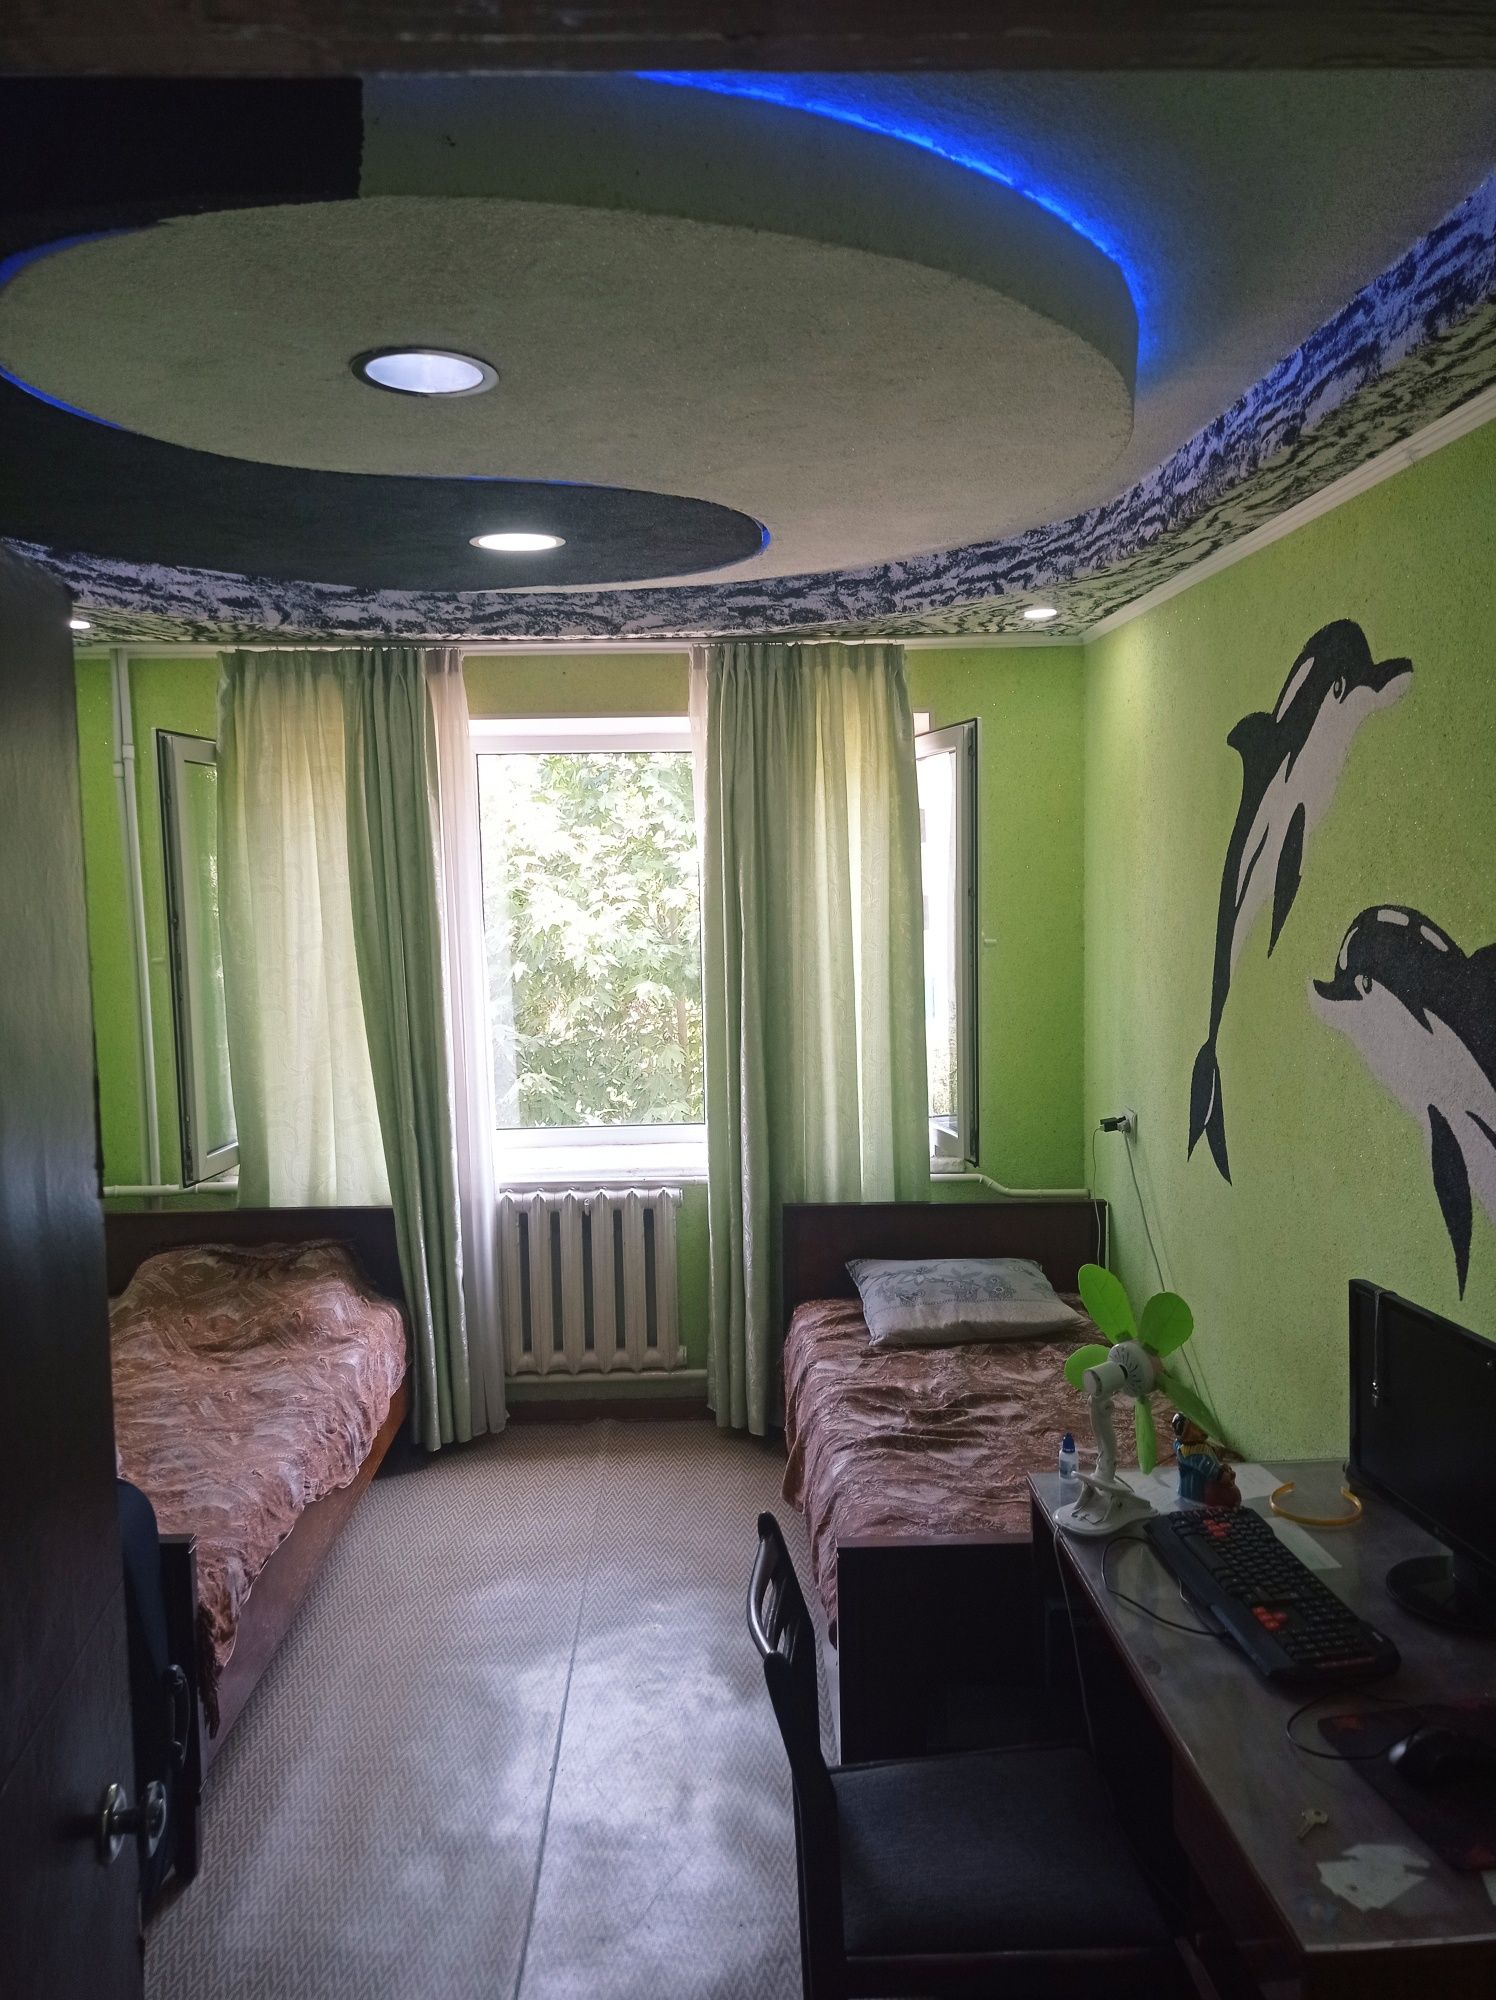 Трёх комнатная квартира с Ташкентской планировкой